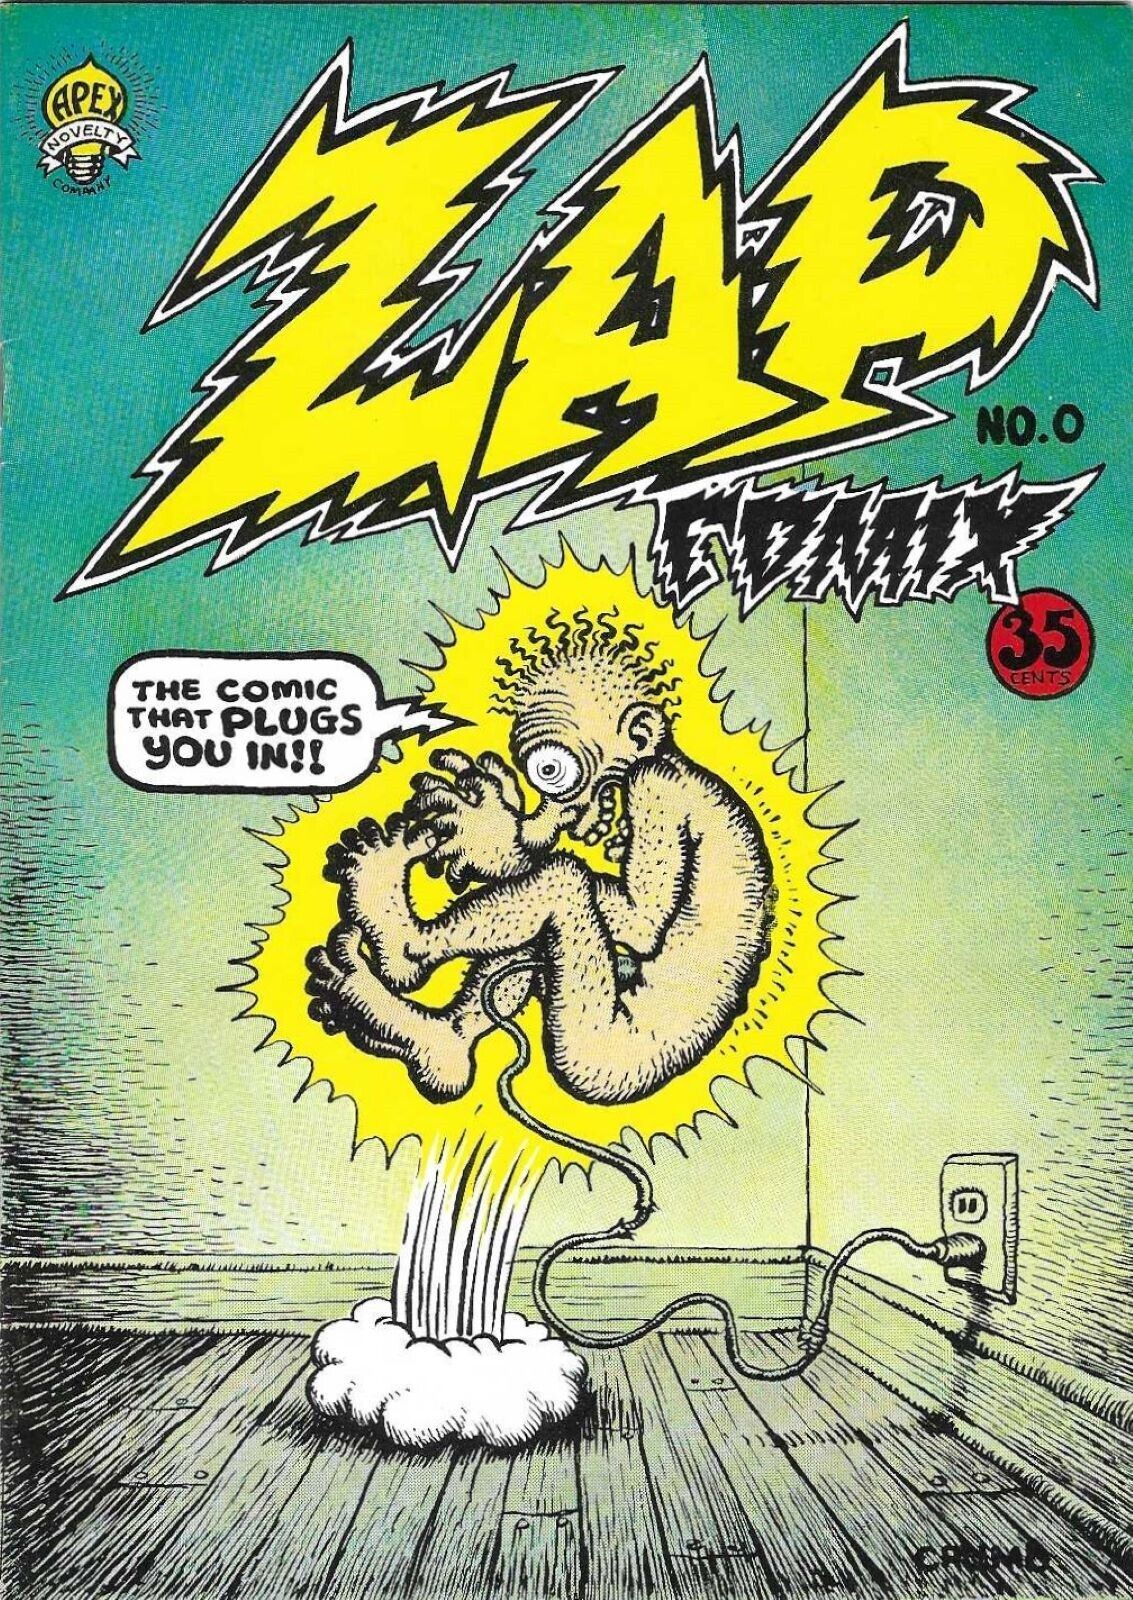 ZAP #0, 1968, NEAR MINT/MINT, 3rd PRINTING ROBERT CRUMB UNDERGROUND CLASSIC